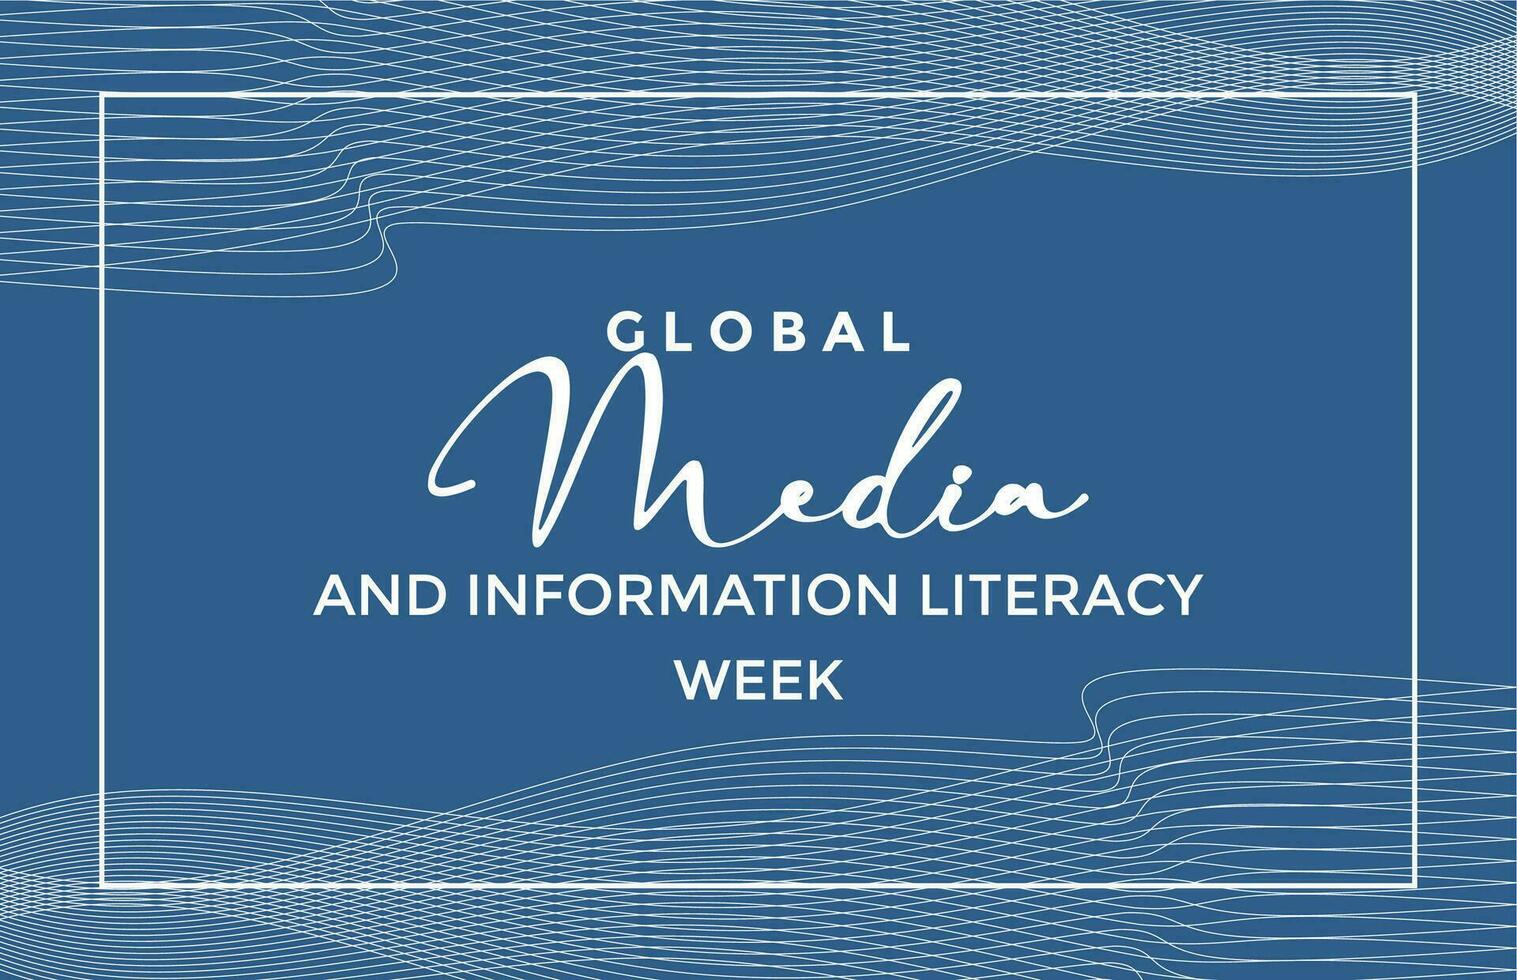 globale media e informazione alfabetizzazione settimana vettore